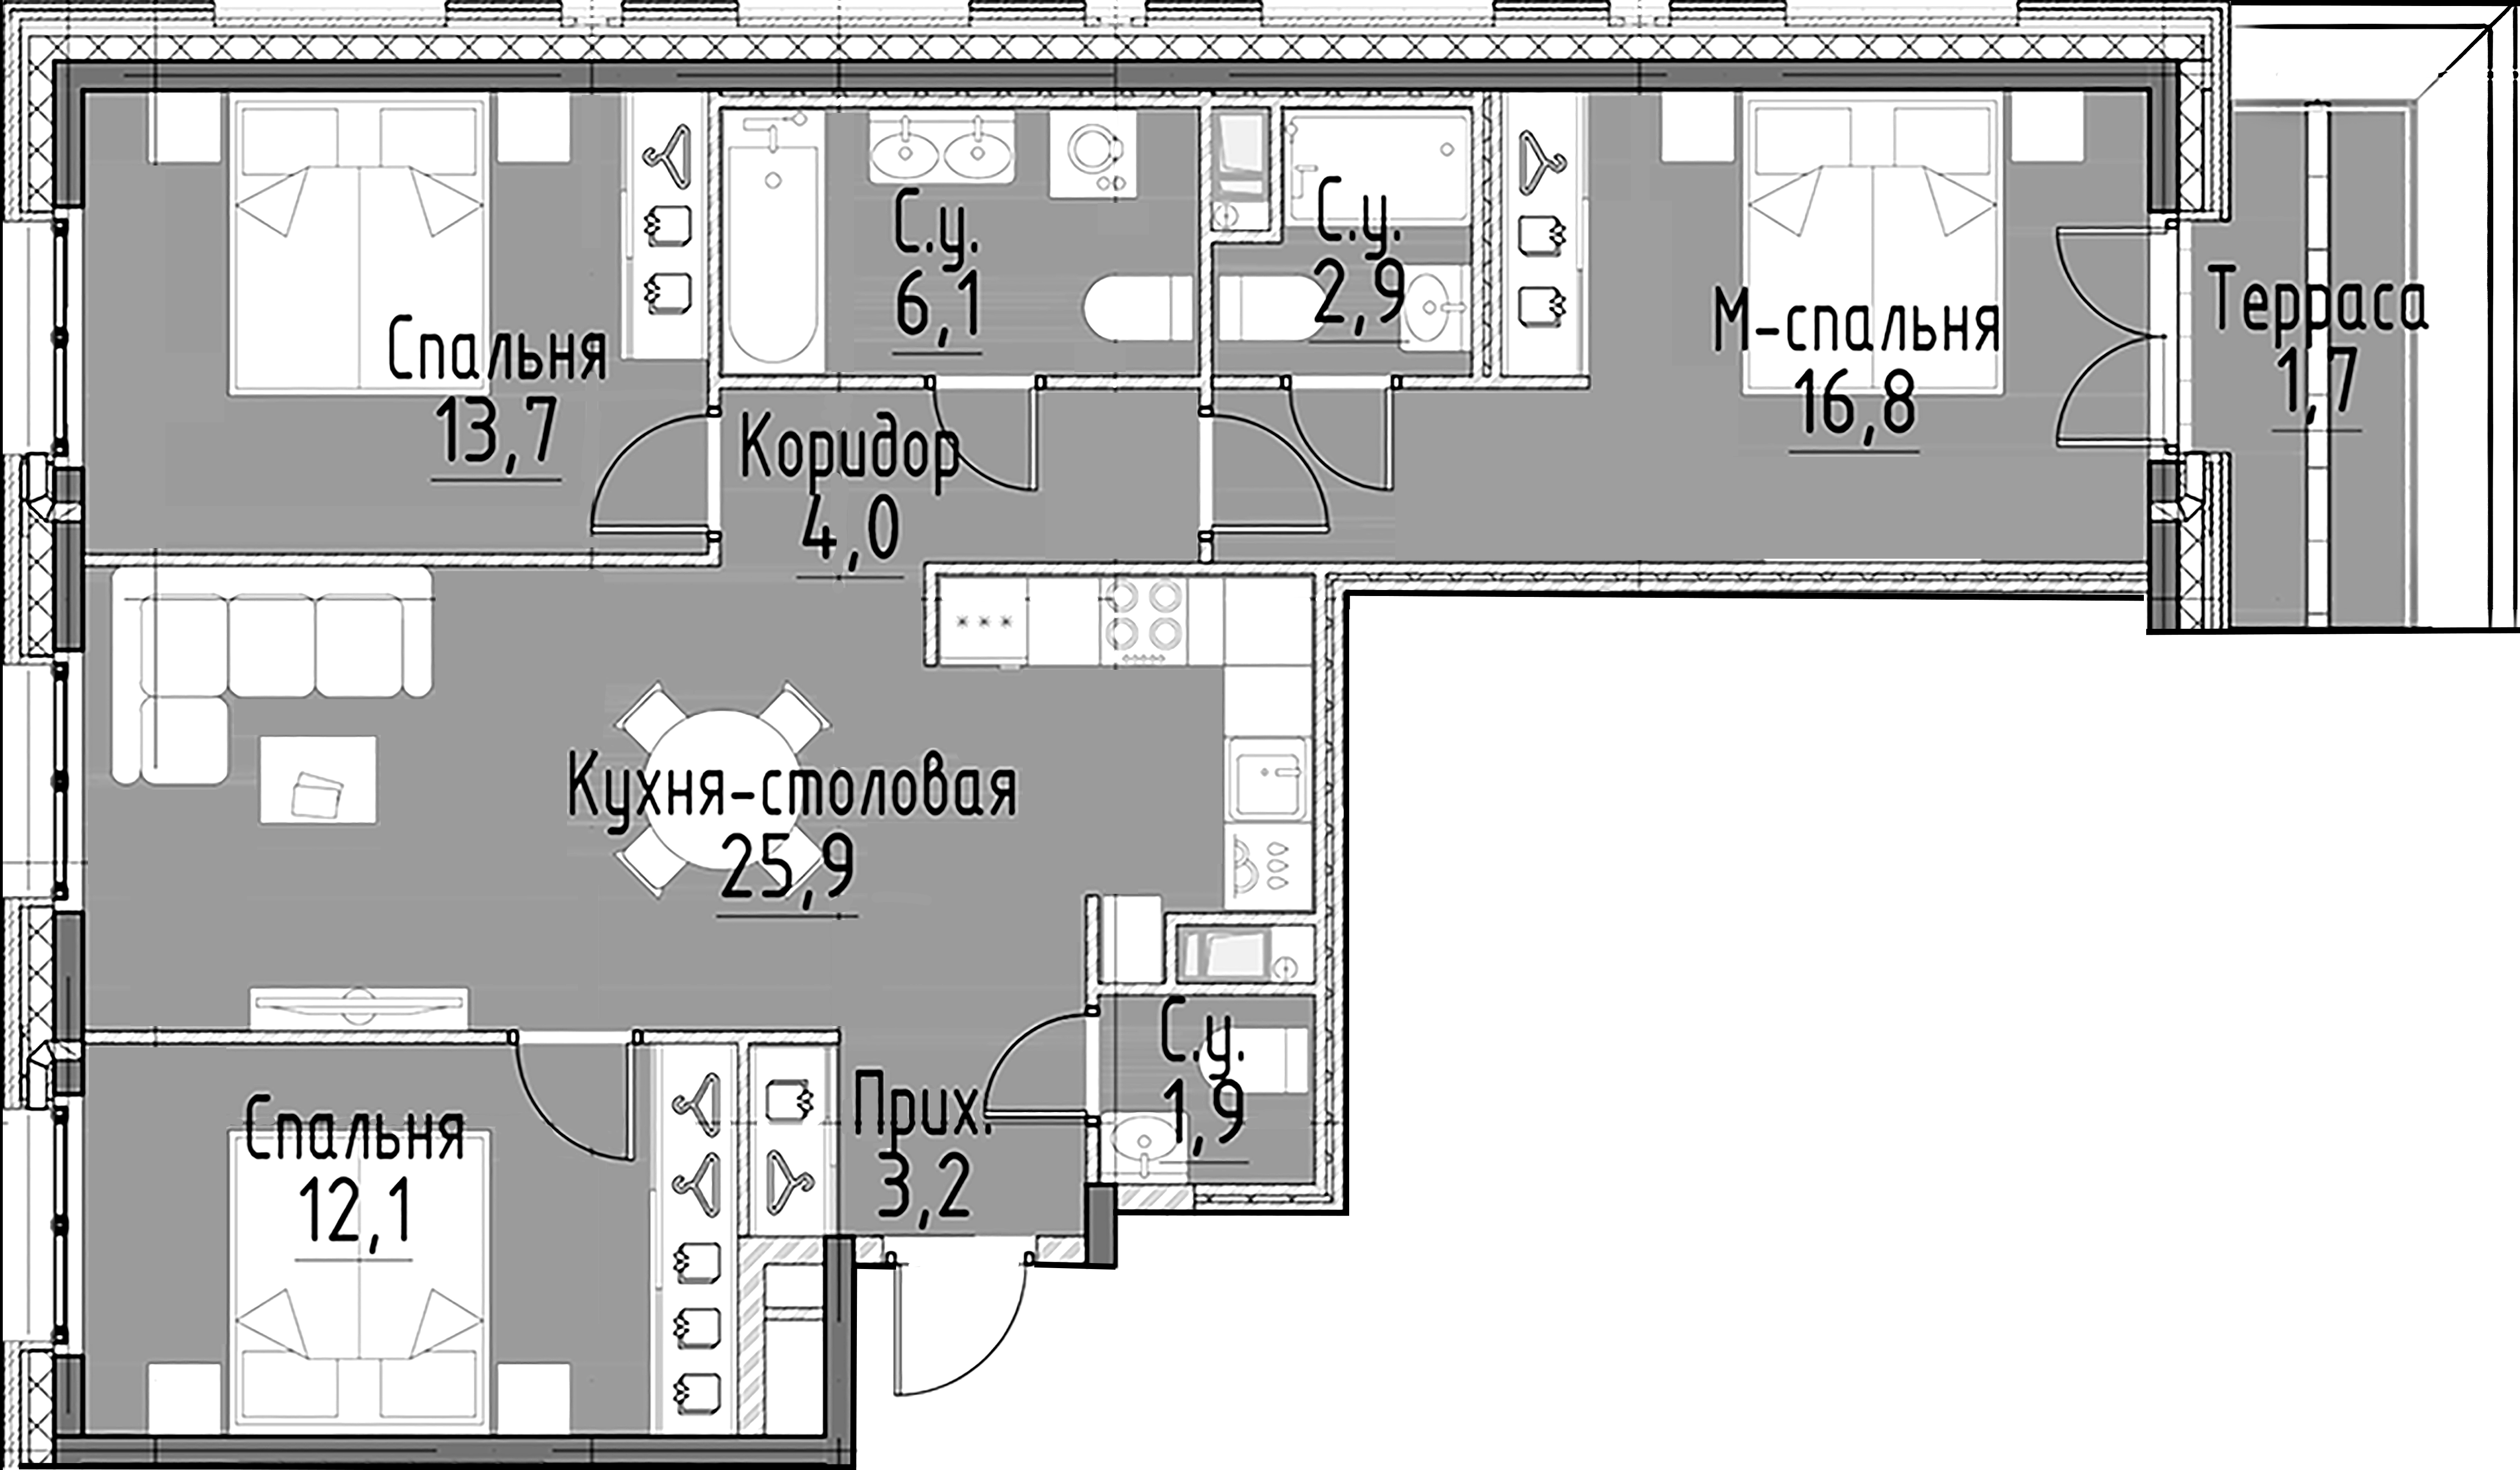 3-комнатная квартира  №134 в Моисеенко, 10: 86.6 м², этаж 10 - купить в Санкт-Петербурге